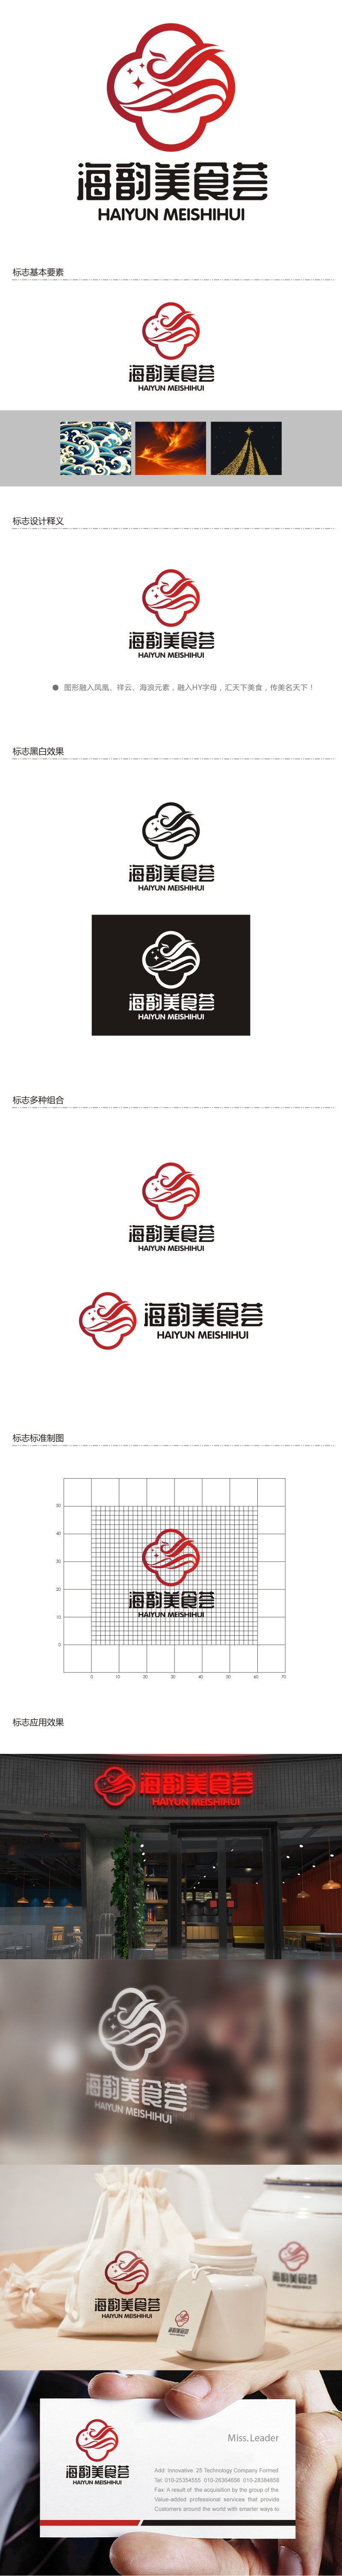 谭家强的海韵美食荟logo设计